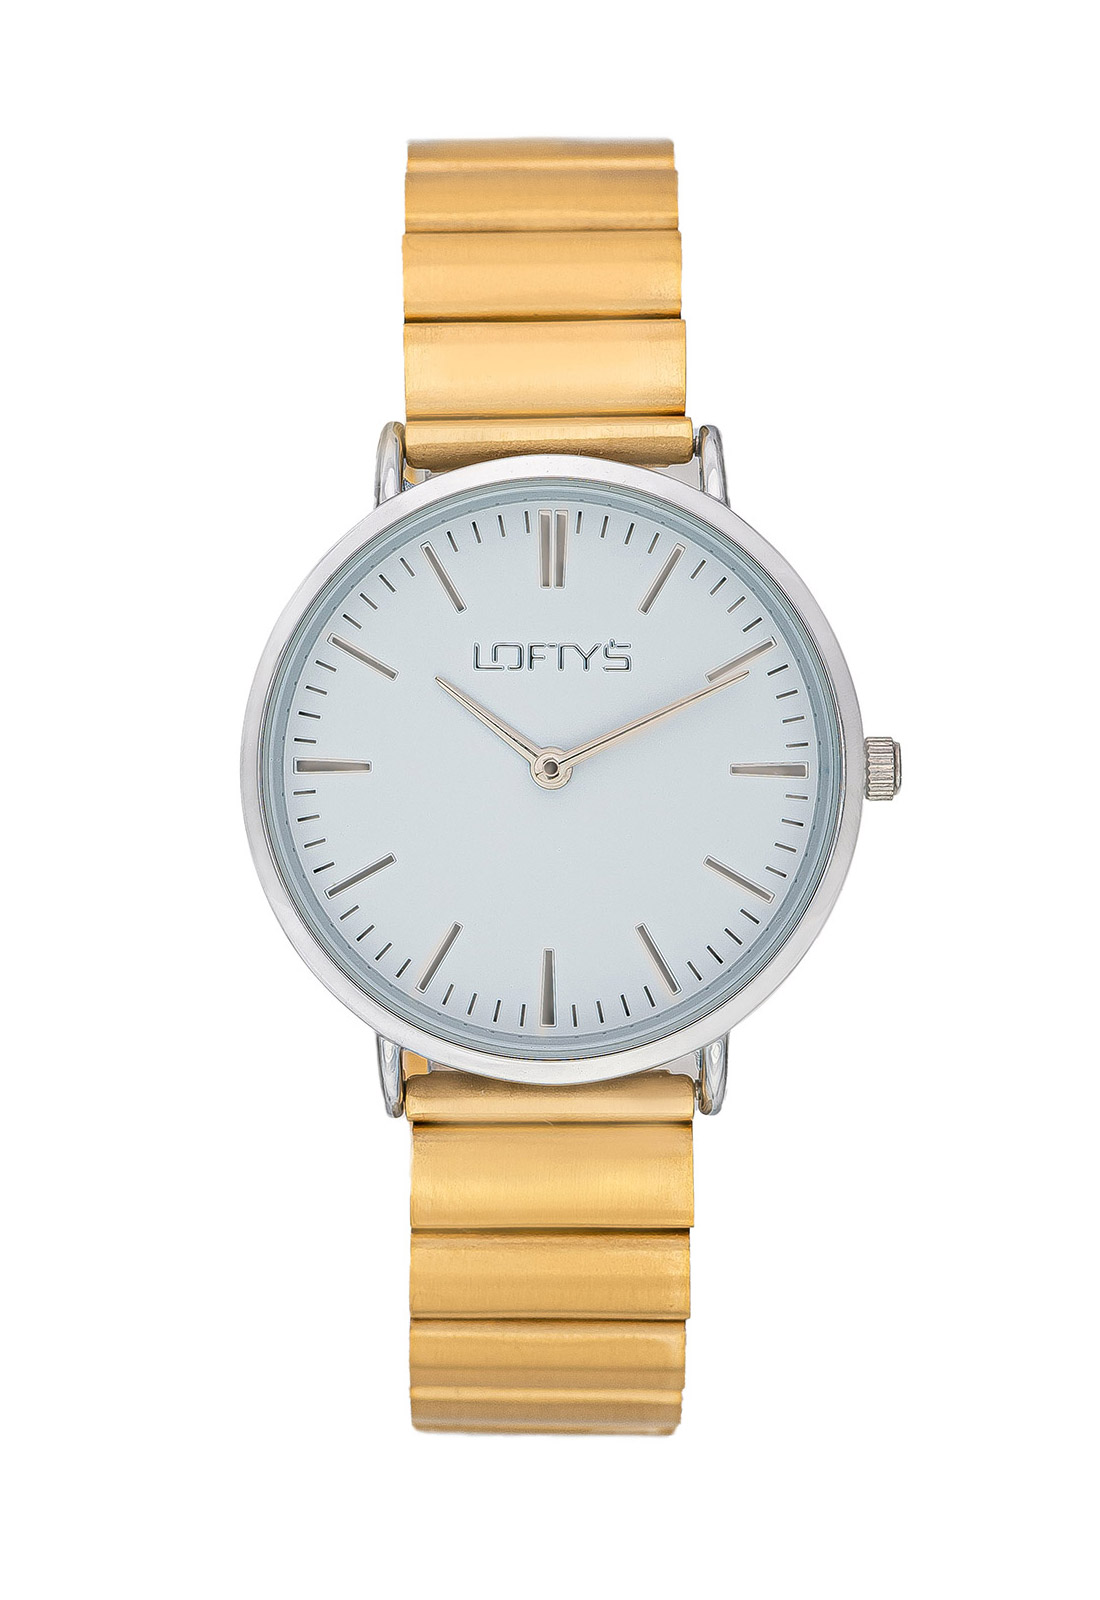 Ρολόι Loftys Corona Χρυσό Μπρασλέ Λευκό Καντράν Y2016-10